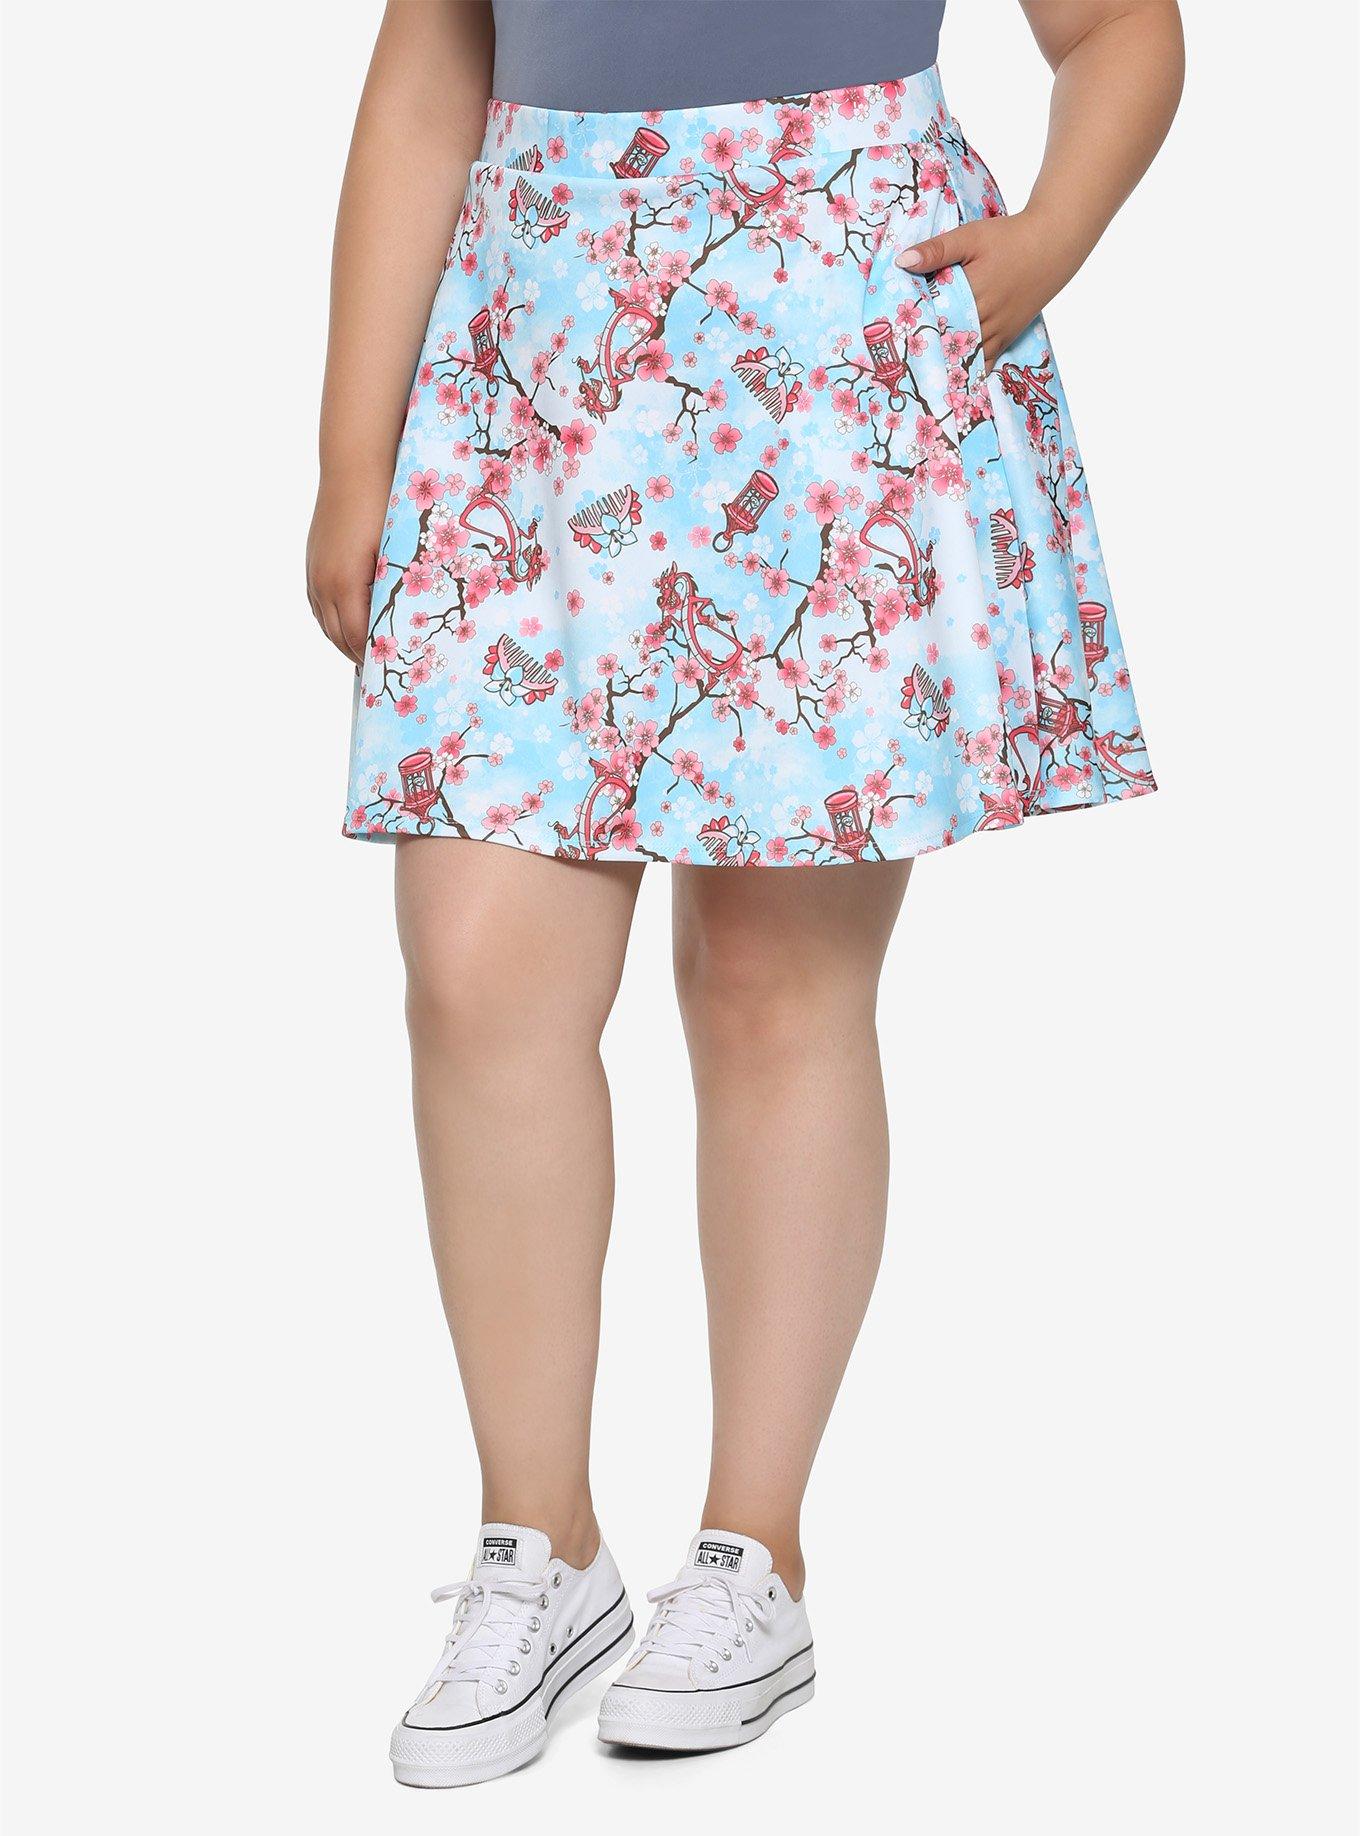 Disney Mulan Cherry Blossom Skater Skirt Plus Size, LIGHT BLUE, hi-res